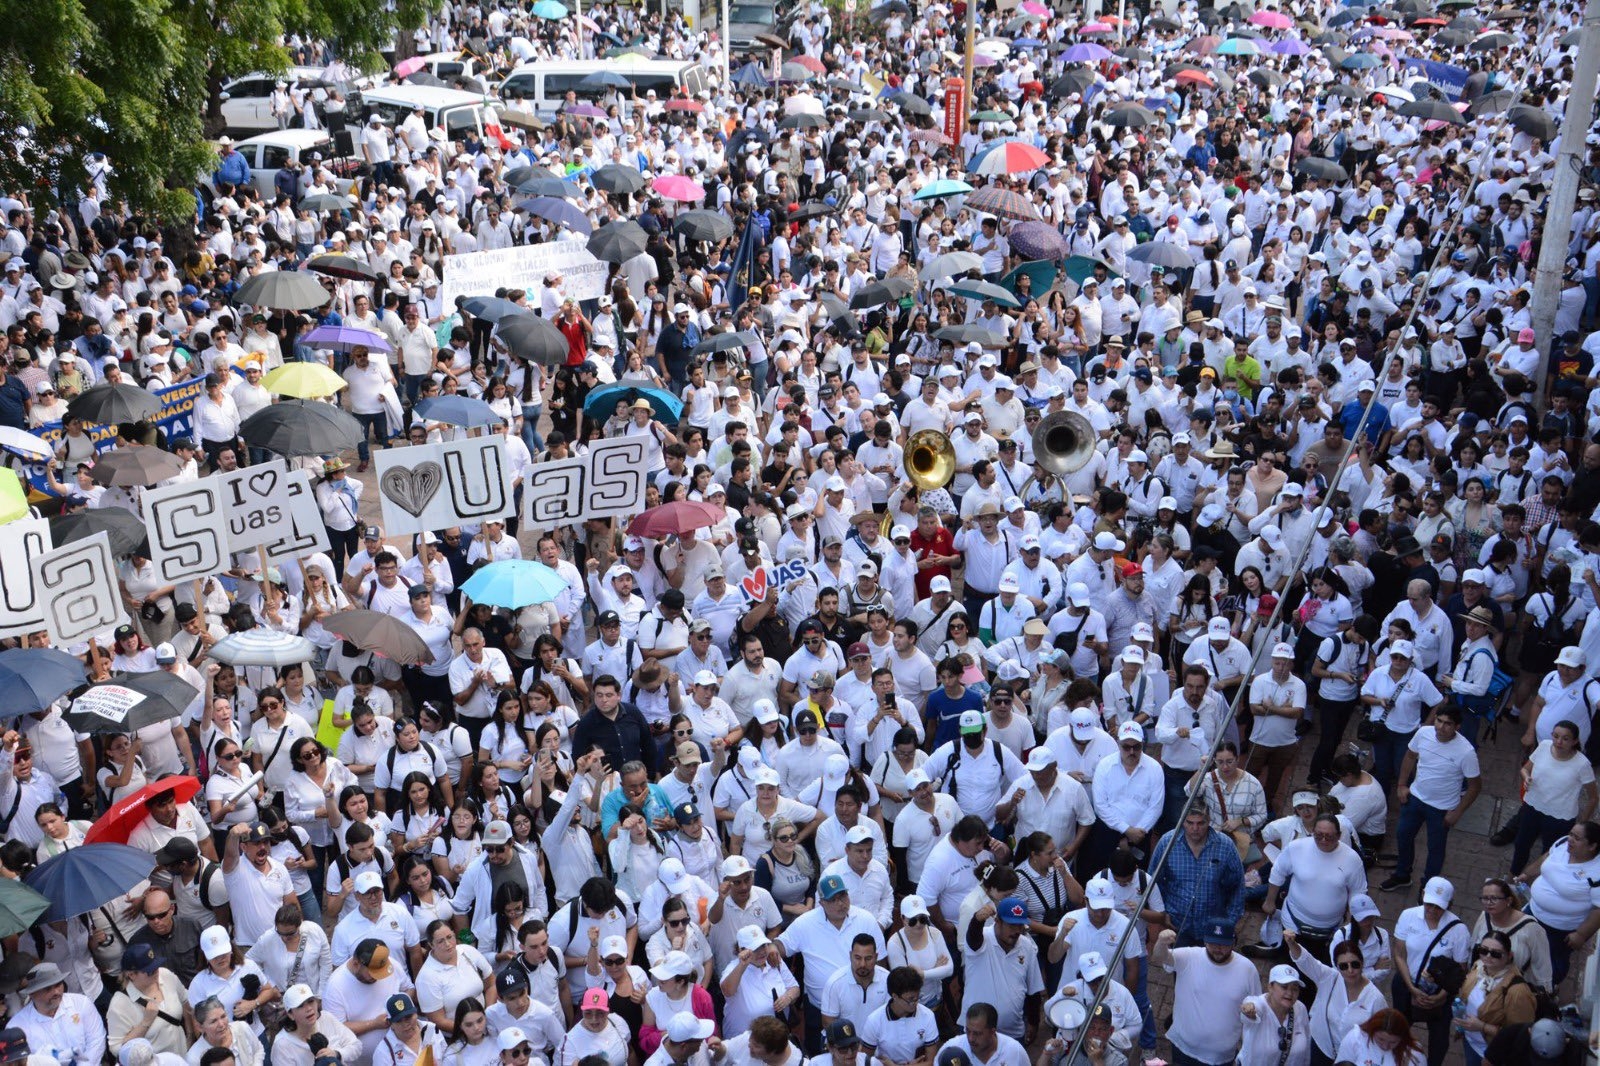 Las calles de Sinaloa lucieron llenas de estudiantes